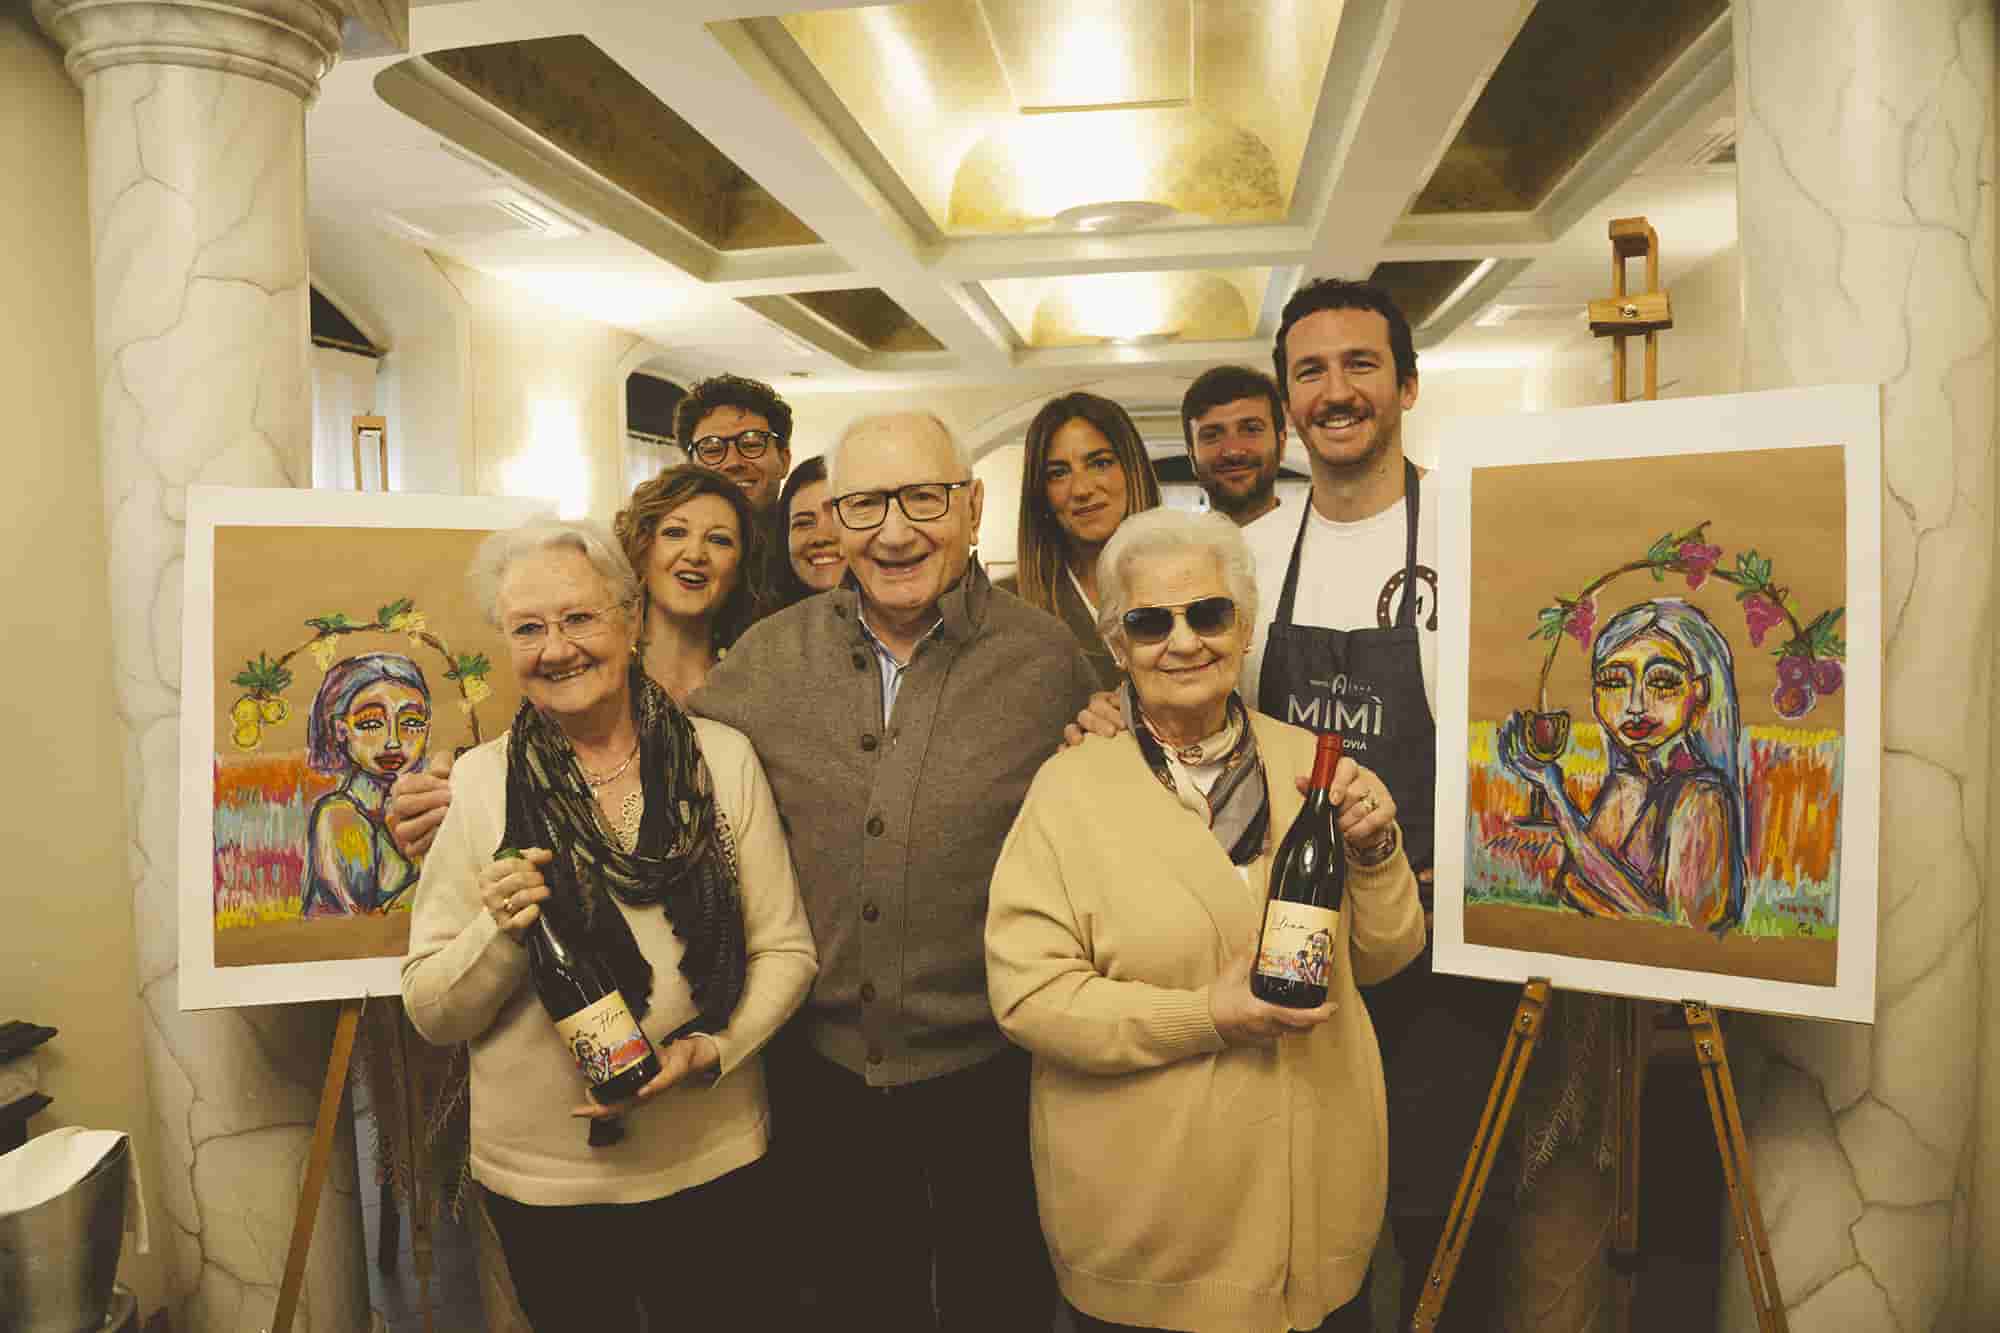 La celebrazione degli 80 anni di Mimì alla Ferrovia continua con i vini Lilina e Flora